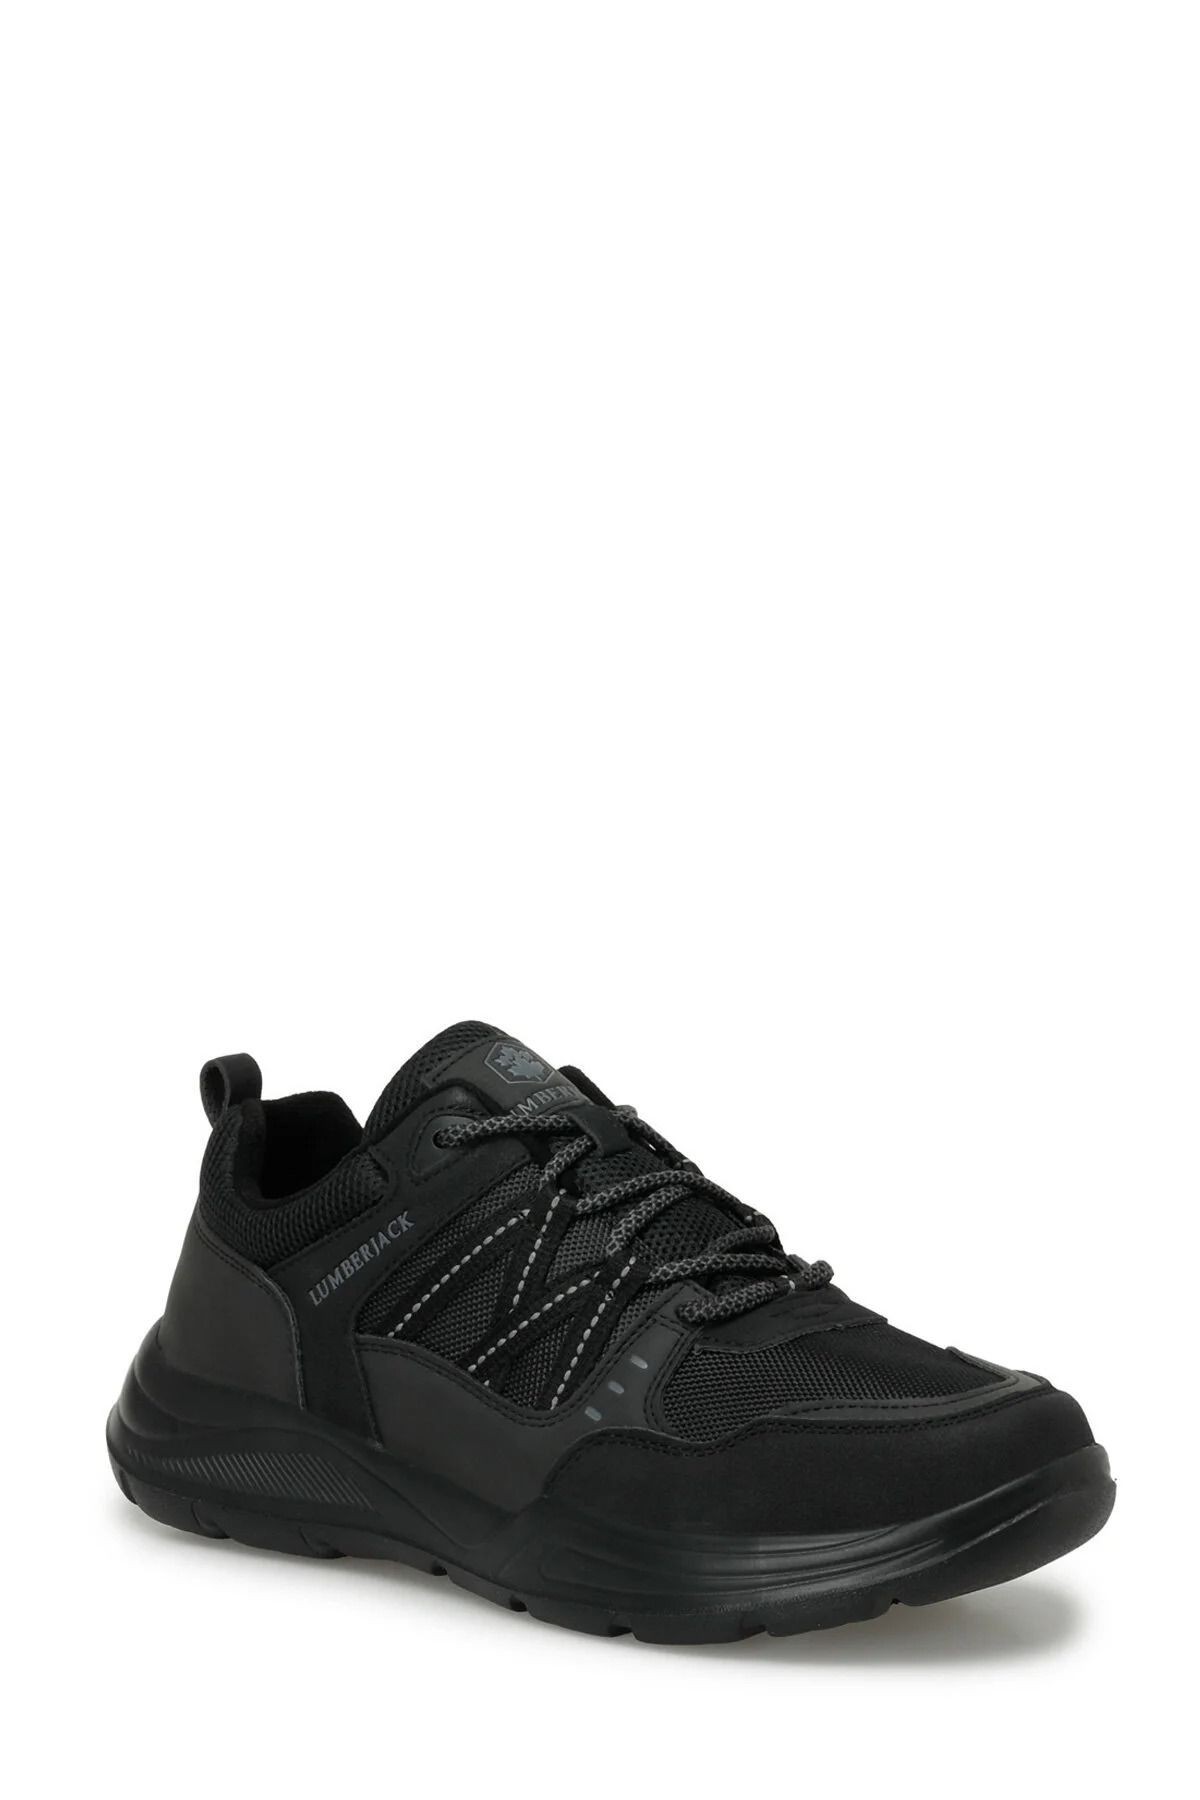 4M XENON 4FX Siyah Erkek Spor Ayakkabısı